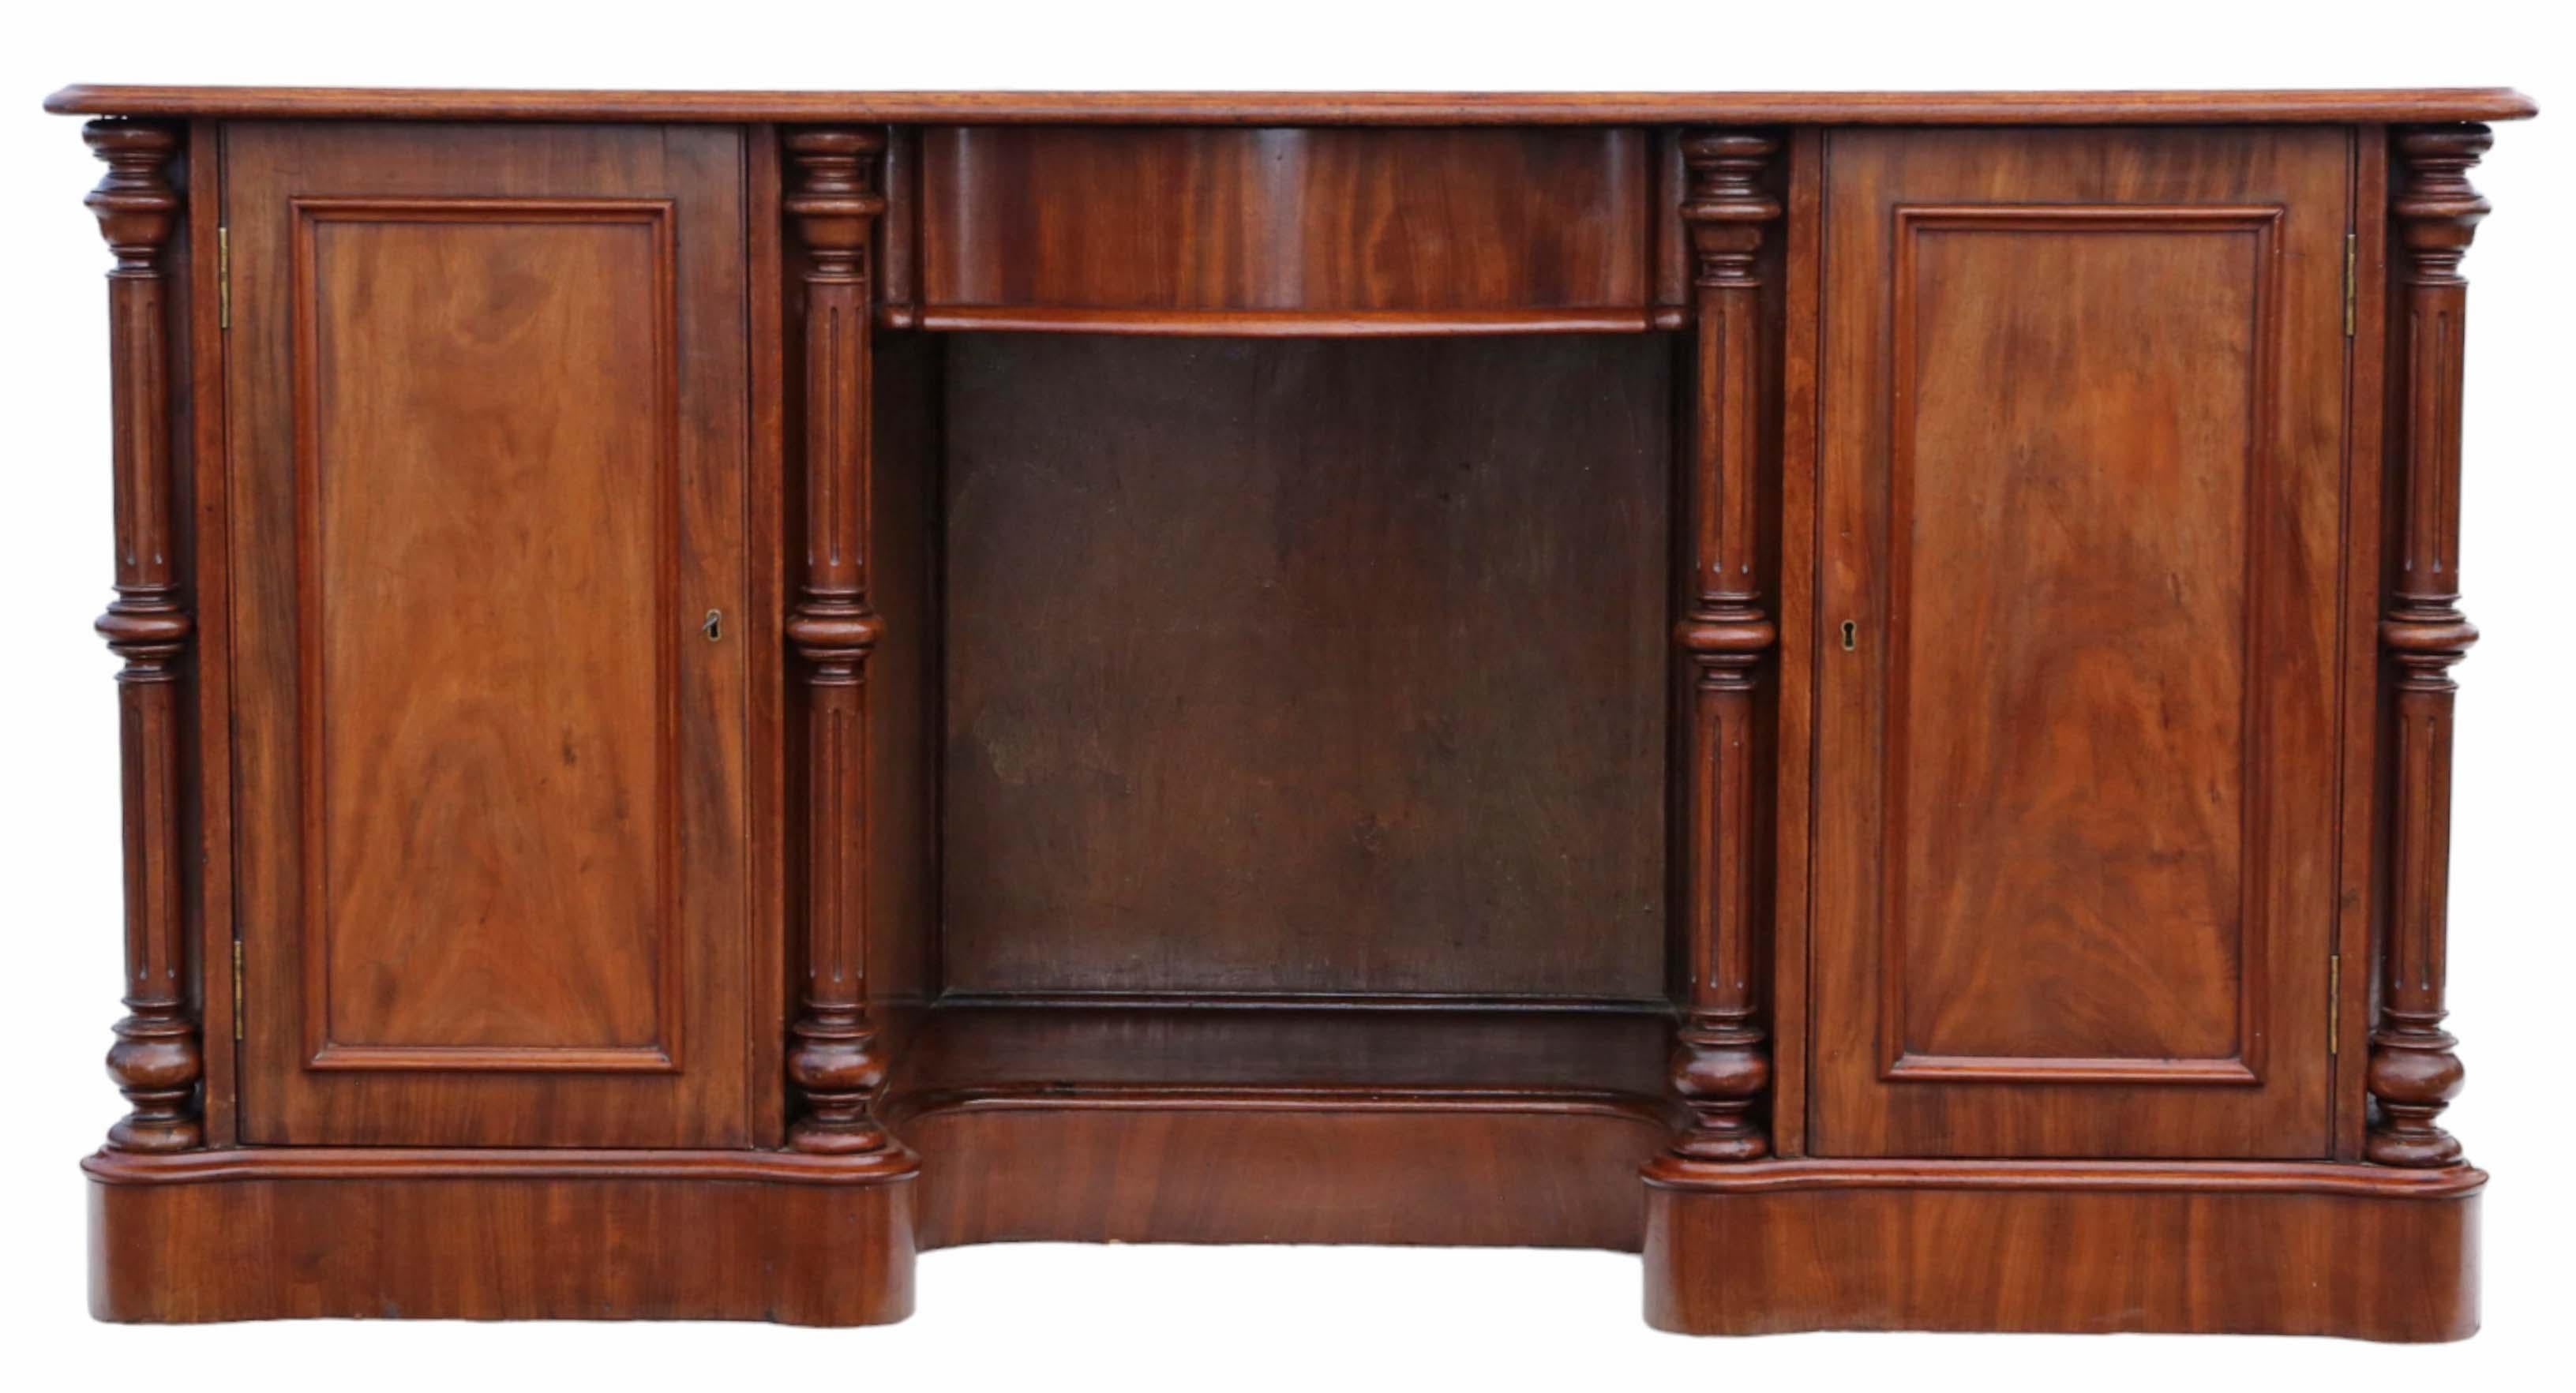 Antiker, hochwertiger großer Mahagoni-Doppelsockel-Schreibtisch aus dem 19. Jahrhundert. Er weist ein schönes Alter, Farbe und Patina auf und steht auf verdeckten Messing- und Keramikrollen.

Dieses Stück ist frei von losen Verbindungen oder